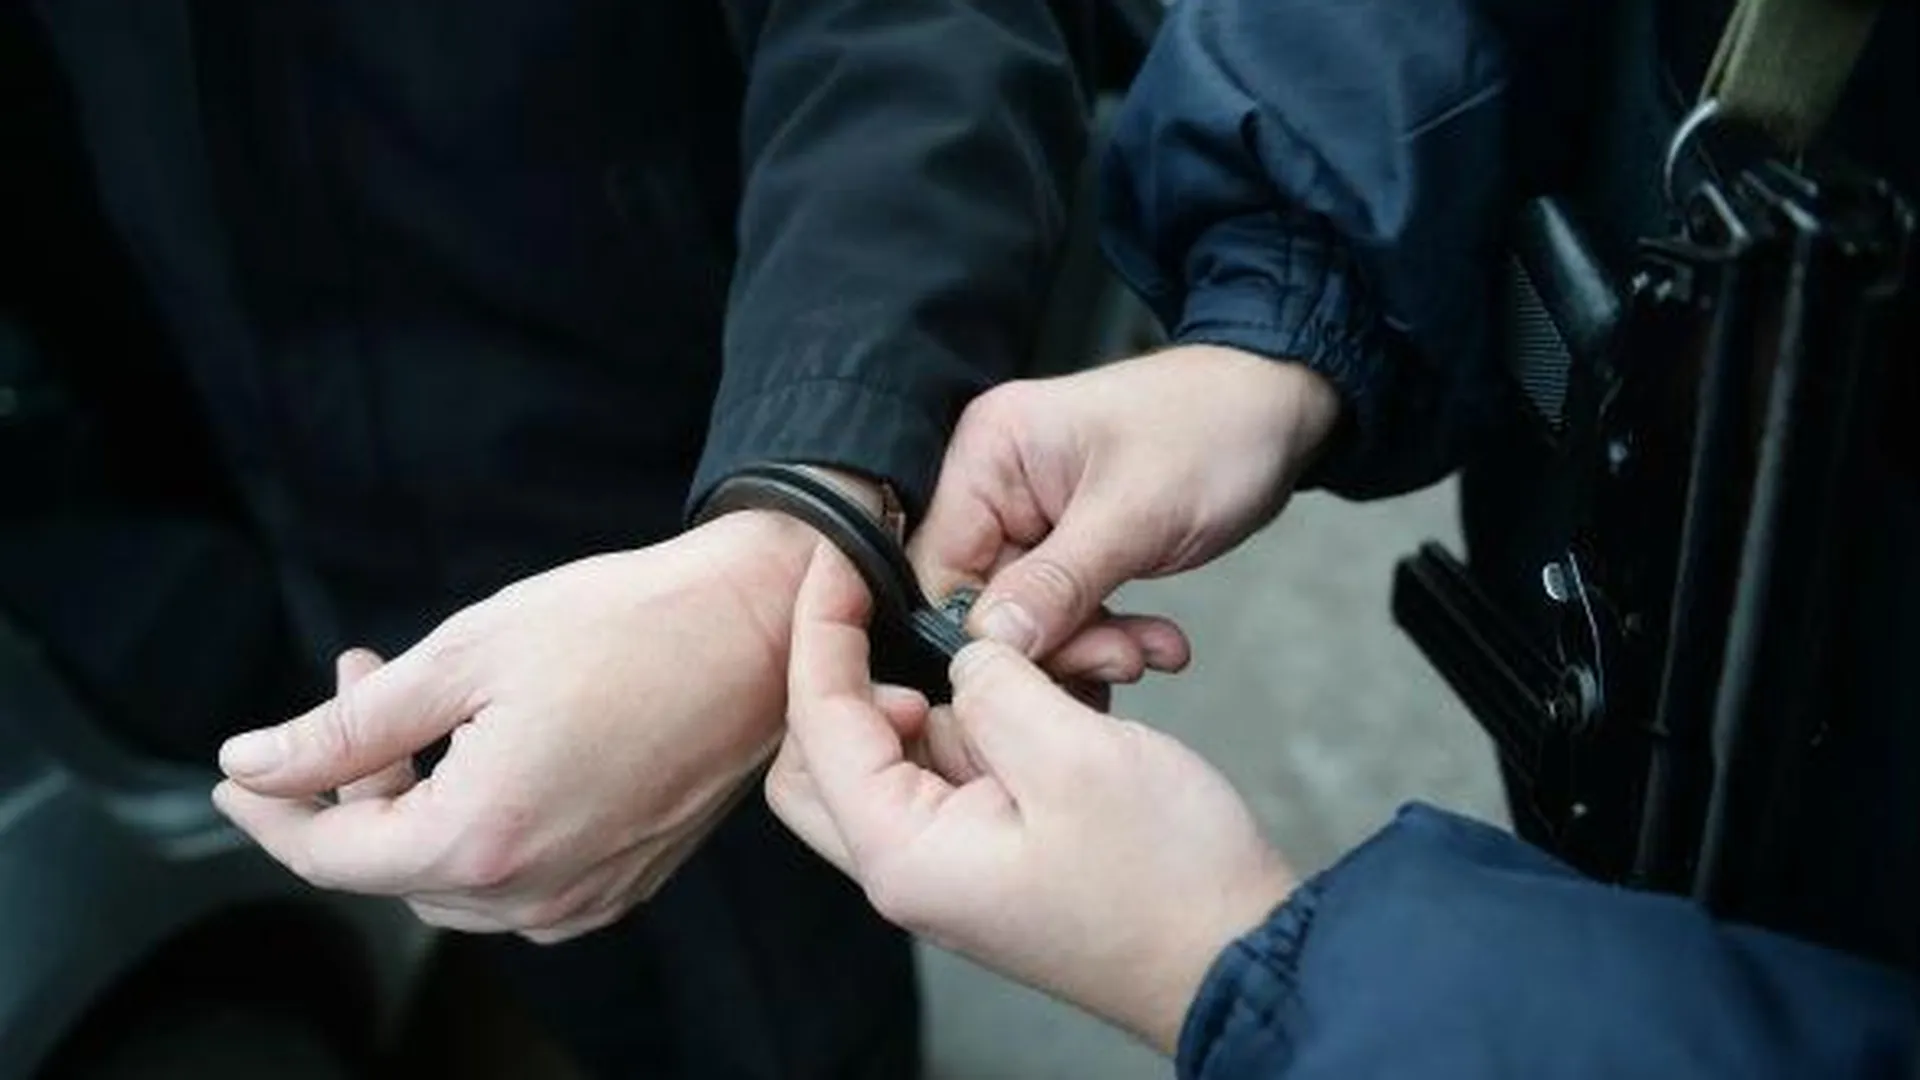 В ГСУ СК РФ по Москве проводятся обыски и задержания